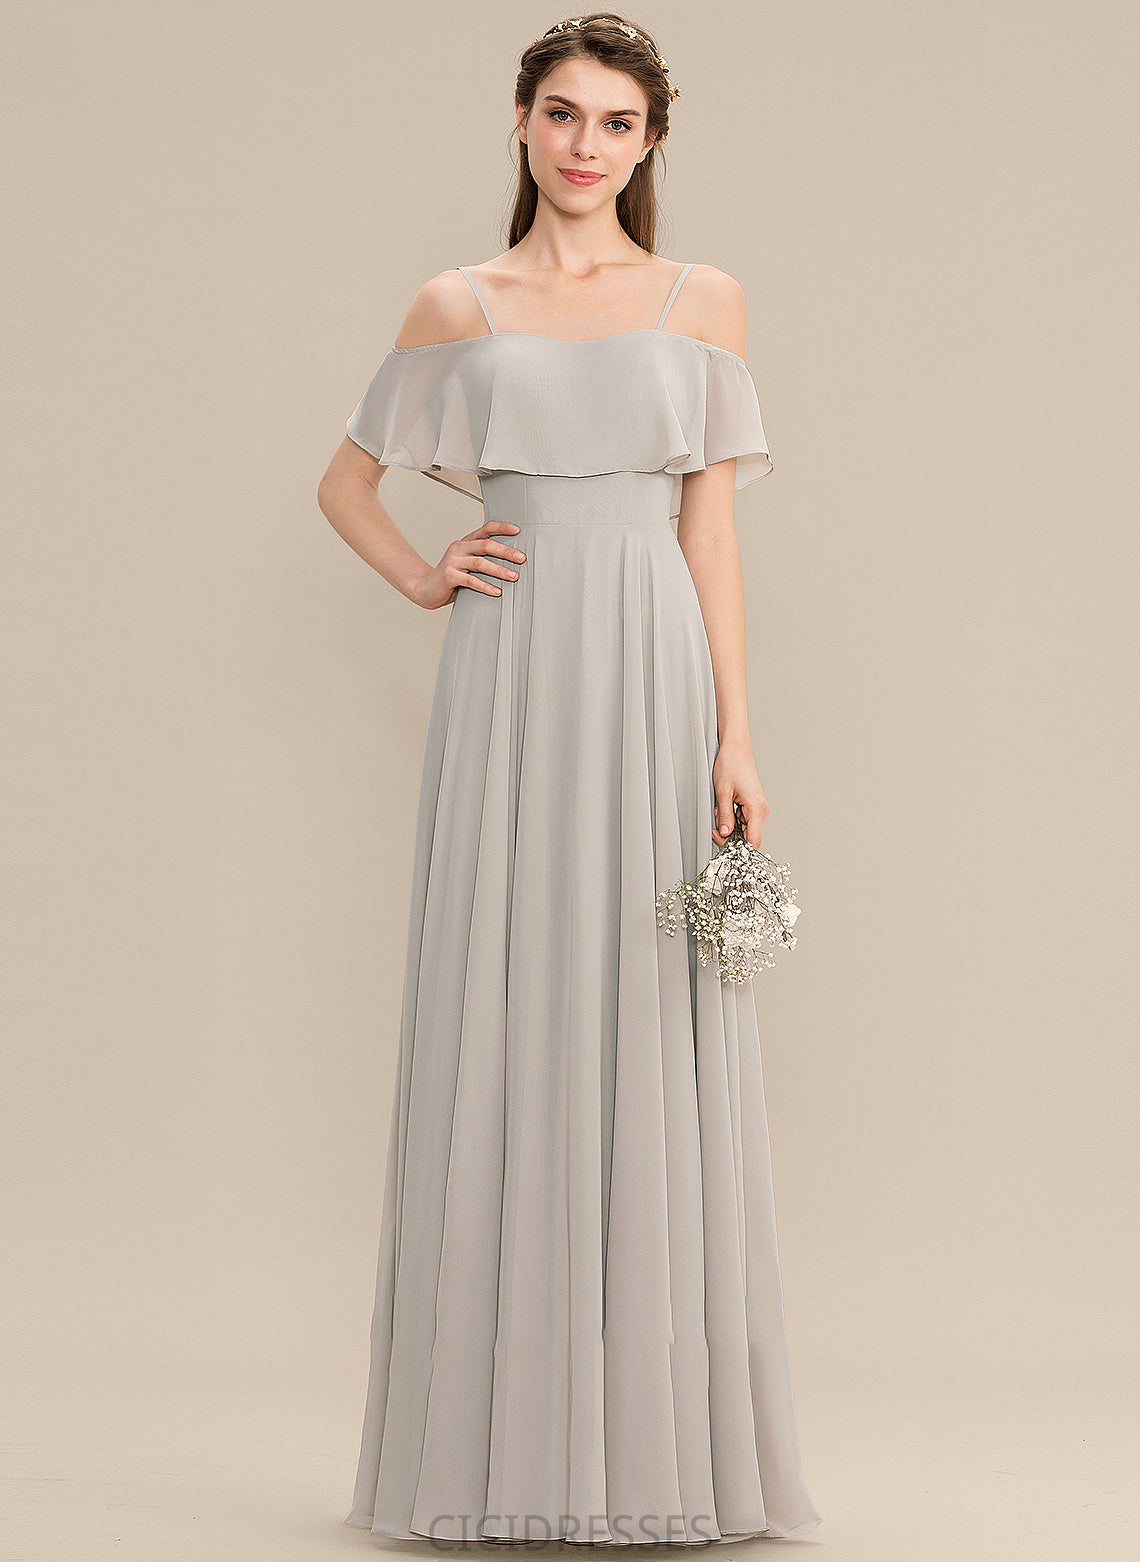 Silhouette A-Line Neckline Off-the-Shoulder Straps Floor-Length Length Fabric Abril Sleeveless A-Line/Princess Natural Waist Bridesmaid Dresses